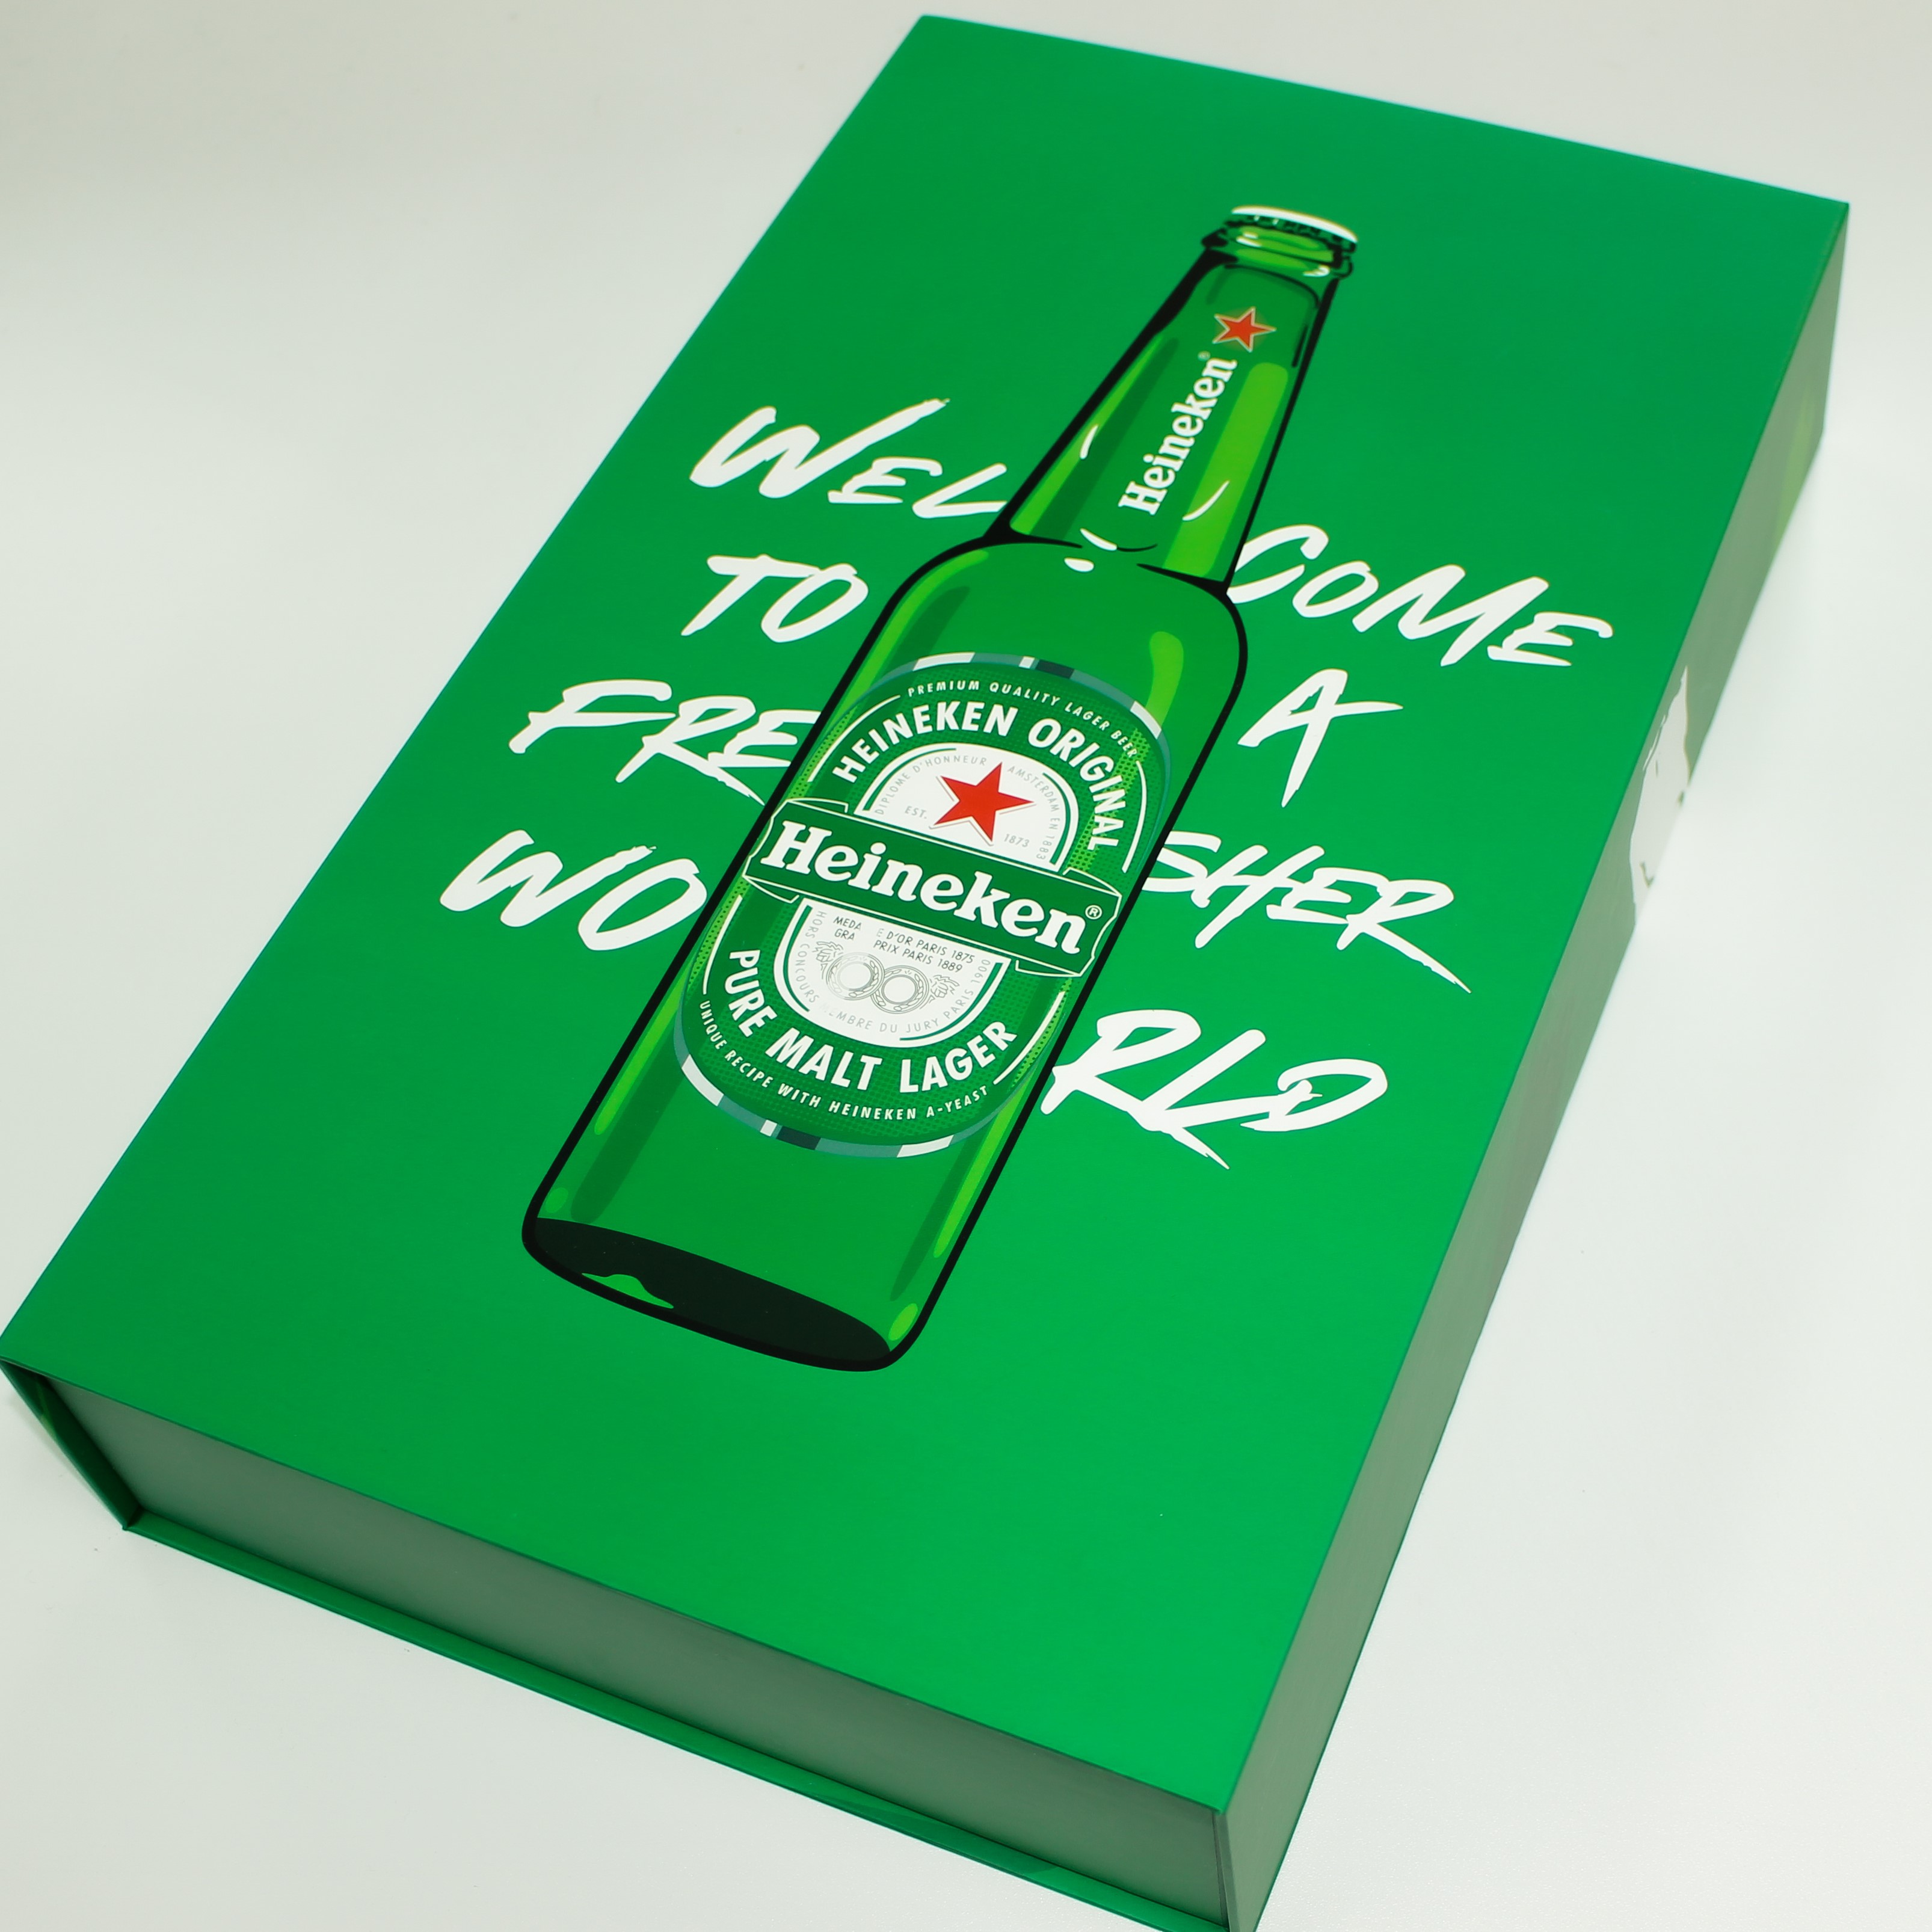 Heineken Influencer Seeding Campaign